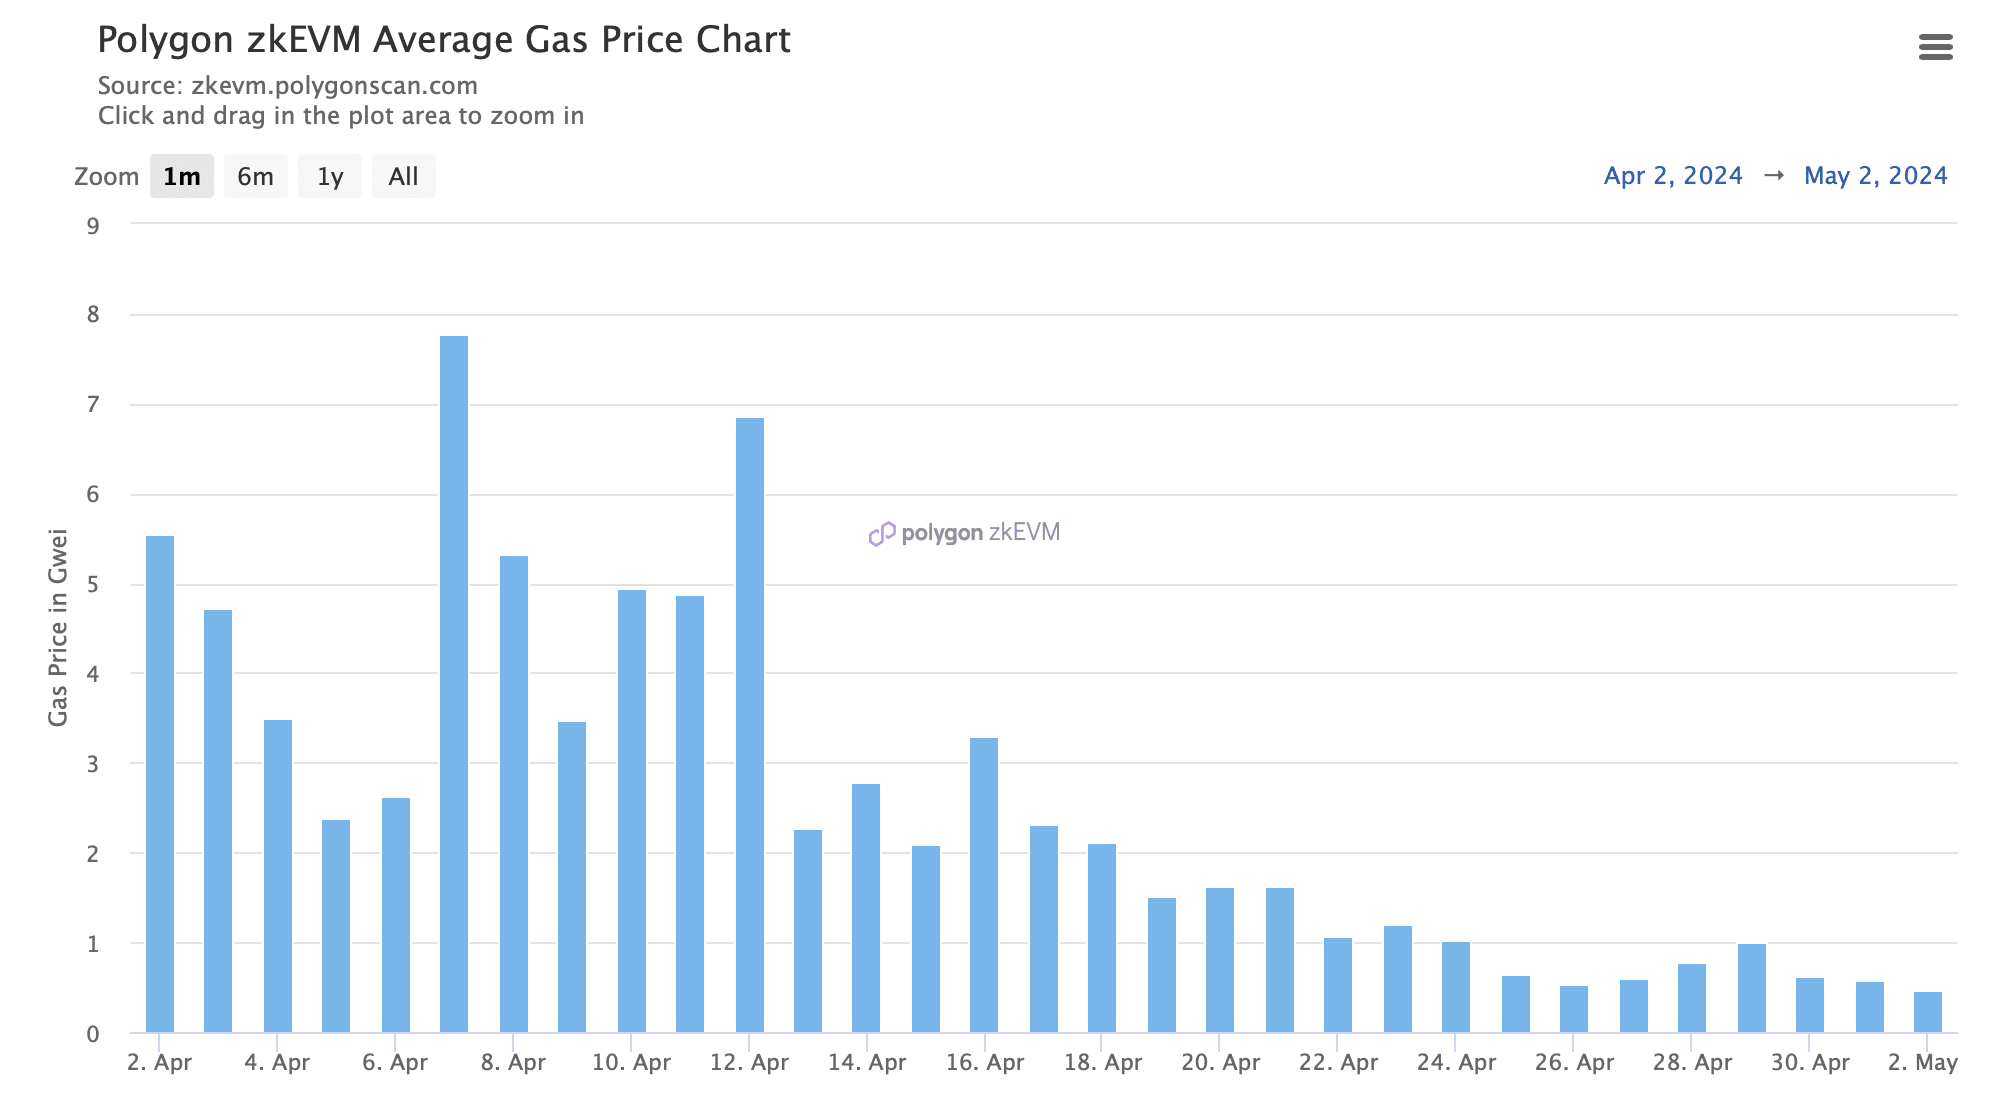 El precio del gas en zkEVM cayó